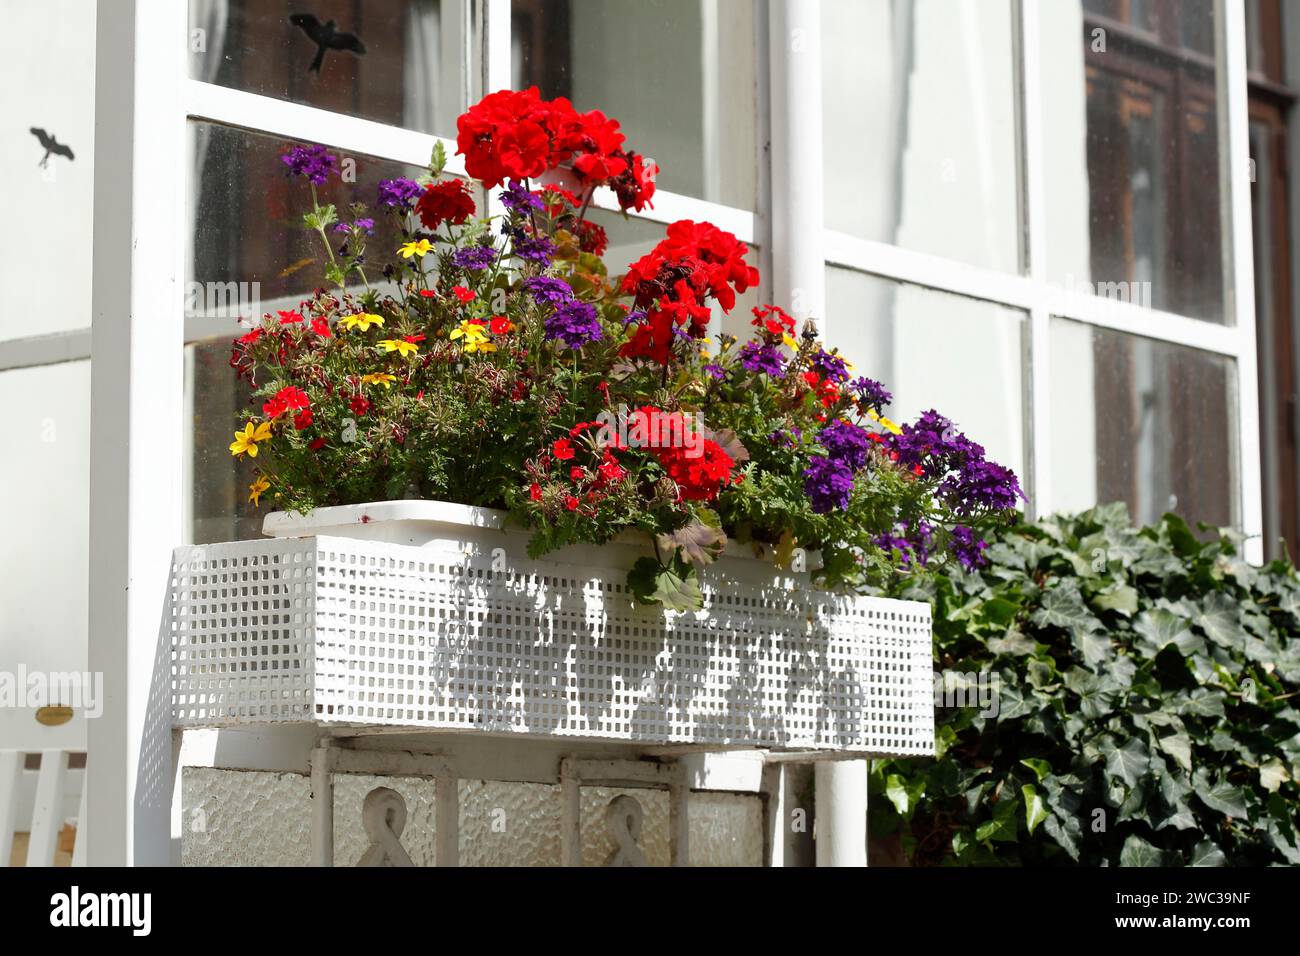 Caja de flores blancas con flores coloridas en una ventana, Alemania Foto de stock